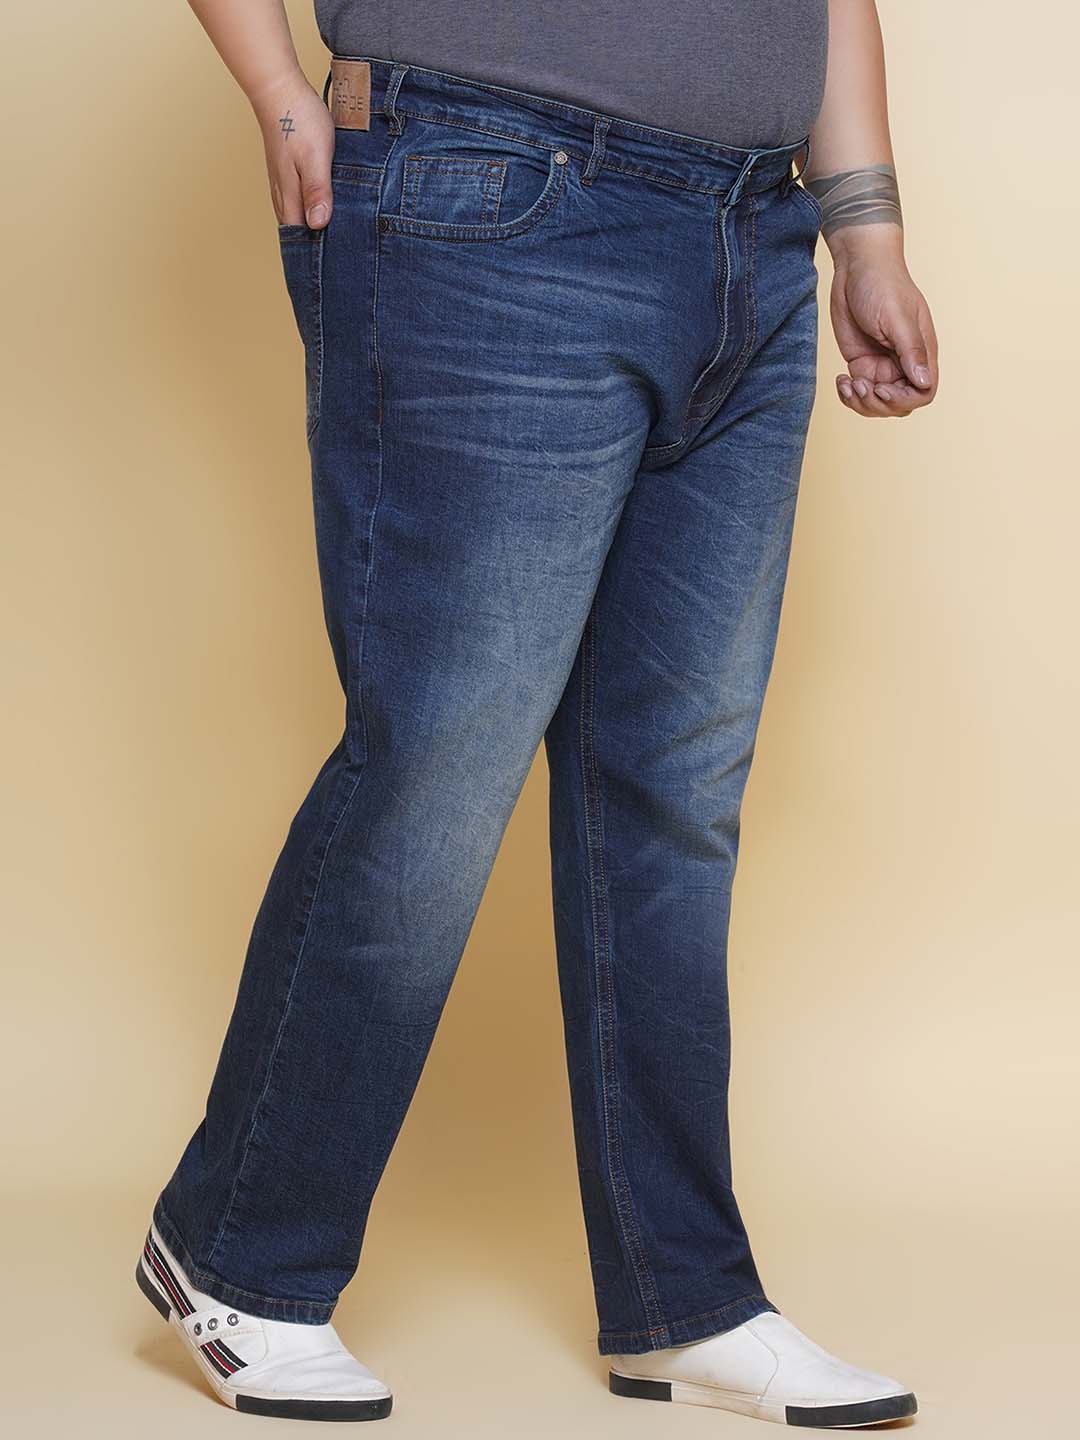 bottomwear/jeans/JPJ27096/jpj27096-3.jpg